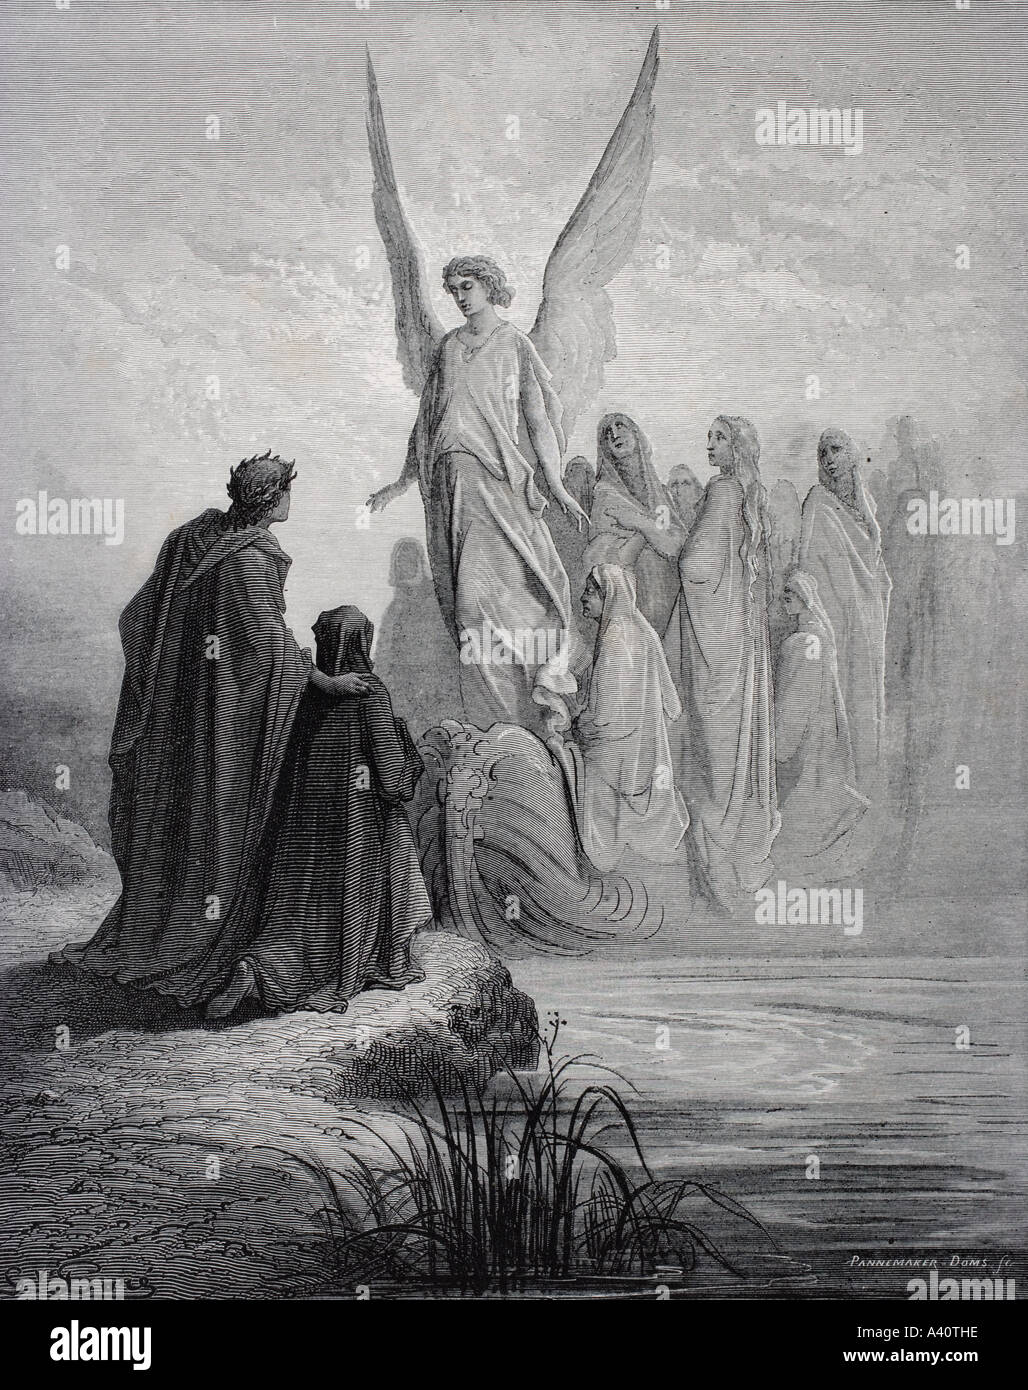 Abbildung für purgatorio von Dante Alighieri. Canto II, Linien 42 und 43, von Gustave Dore, 1832 - 1883. Französische Künstler und Illustrator. Stockfoto